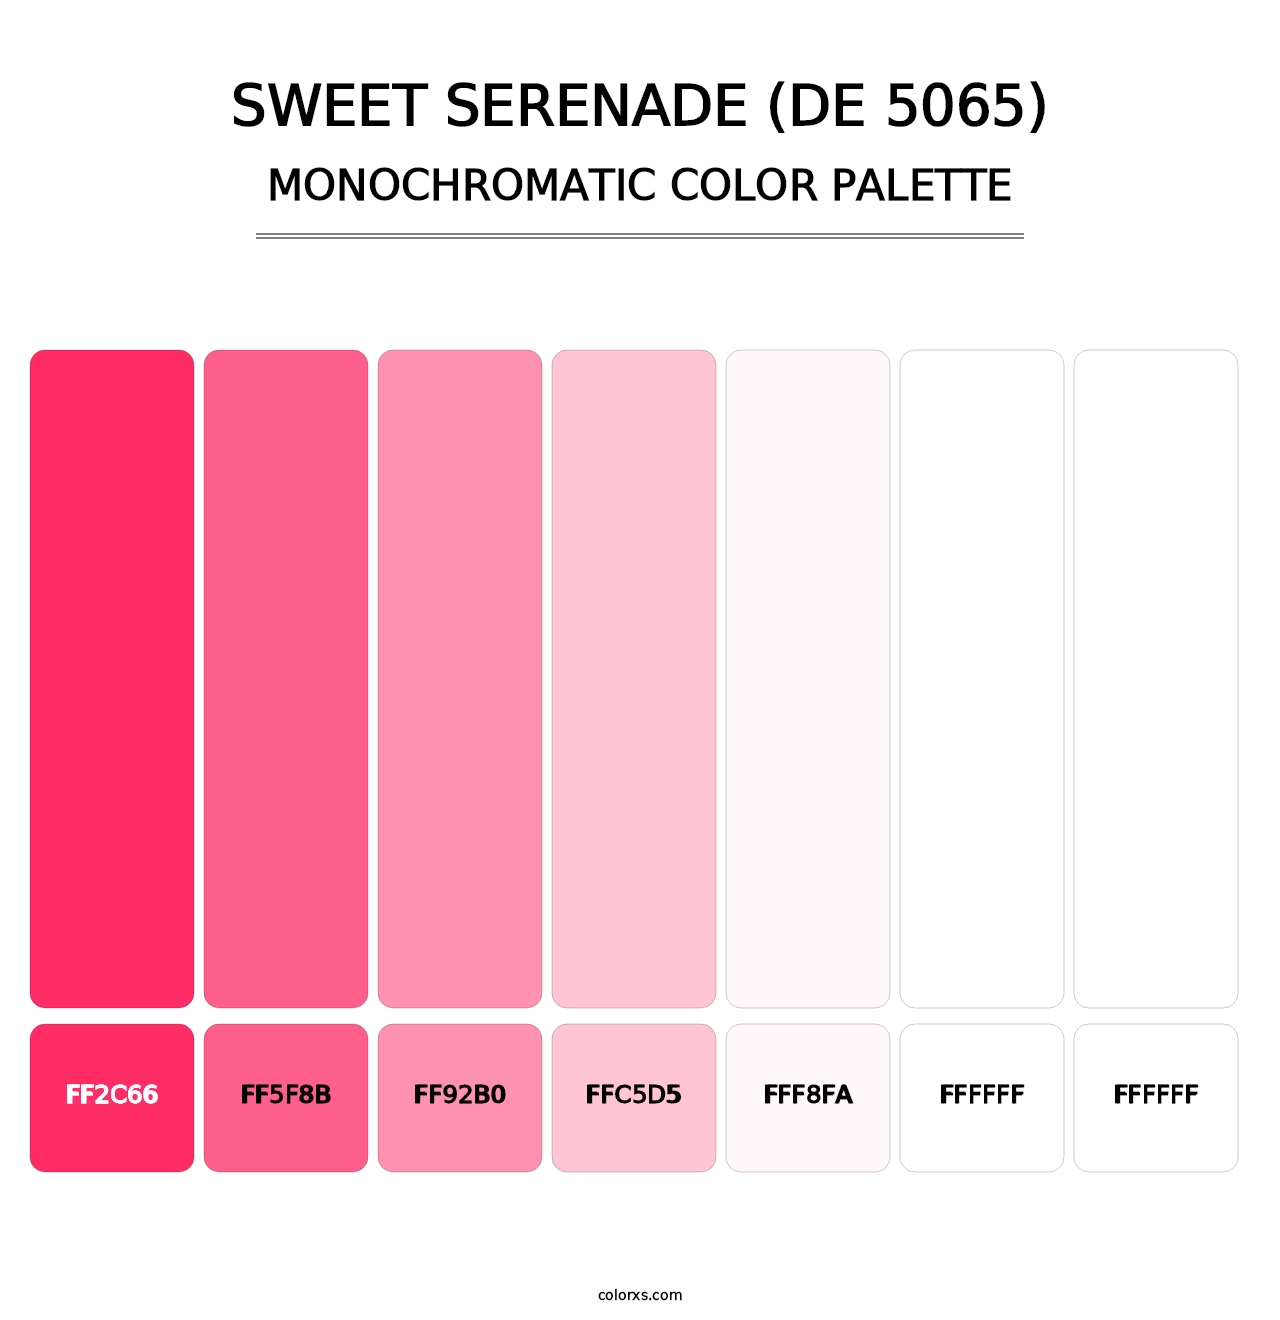 Sweet Serenade (DE 5065) - Monochromatic Color Palette